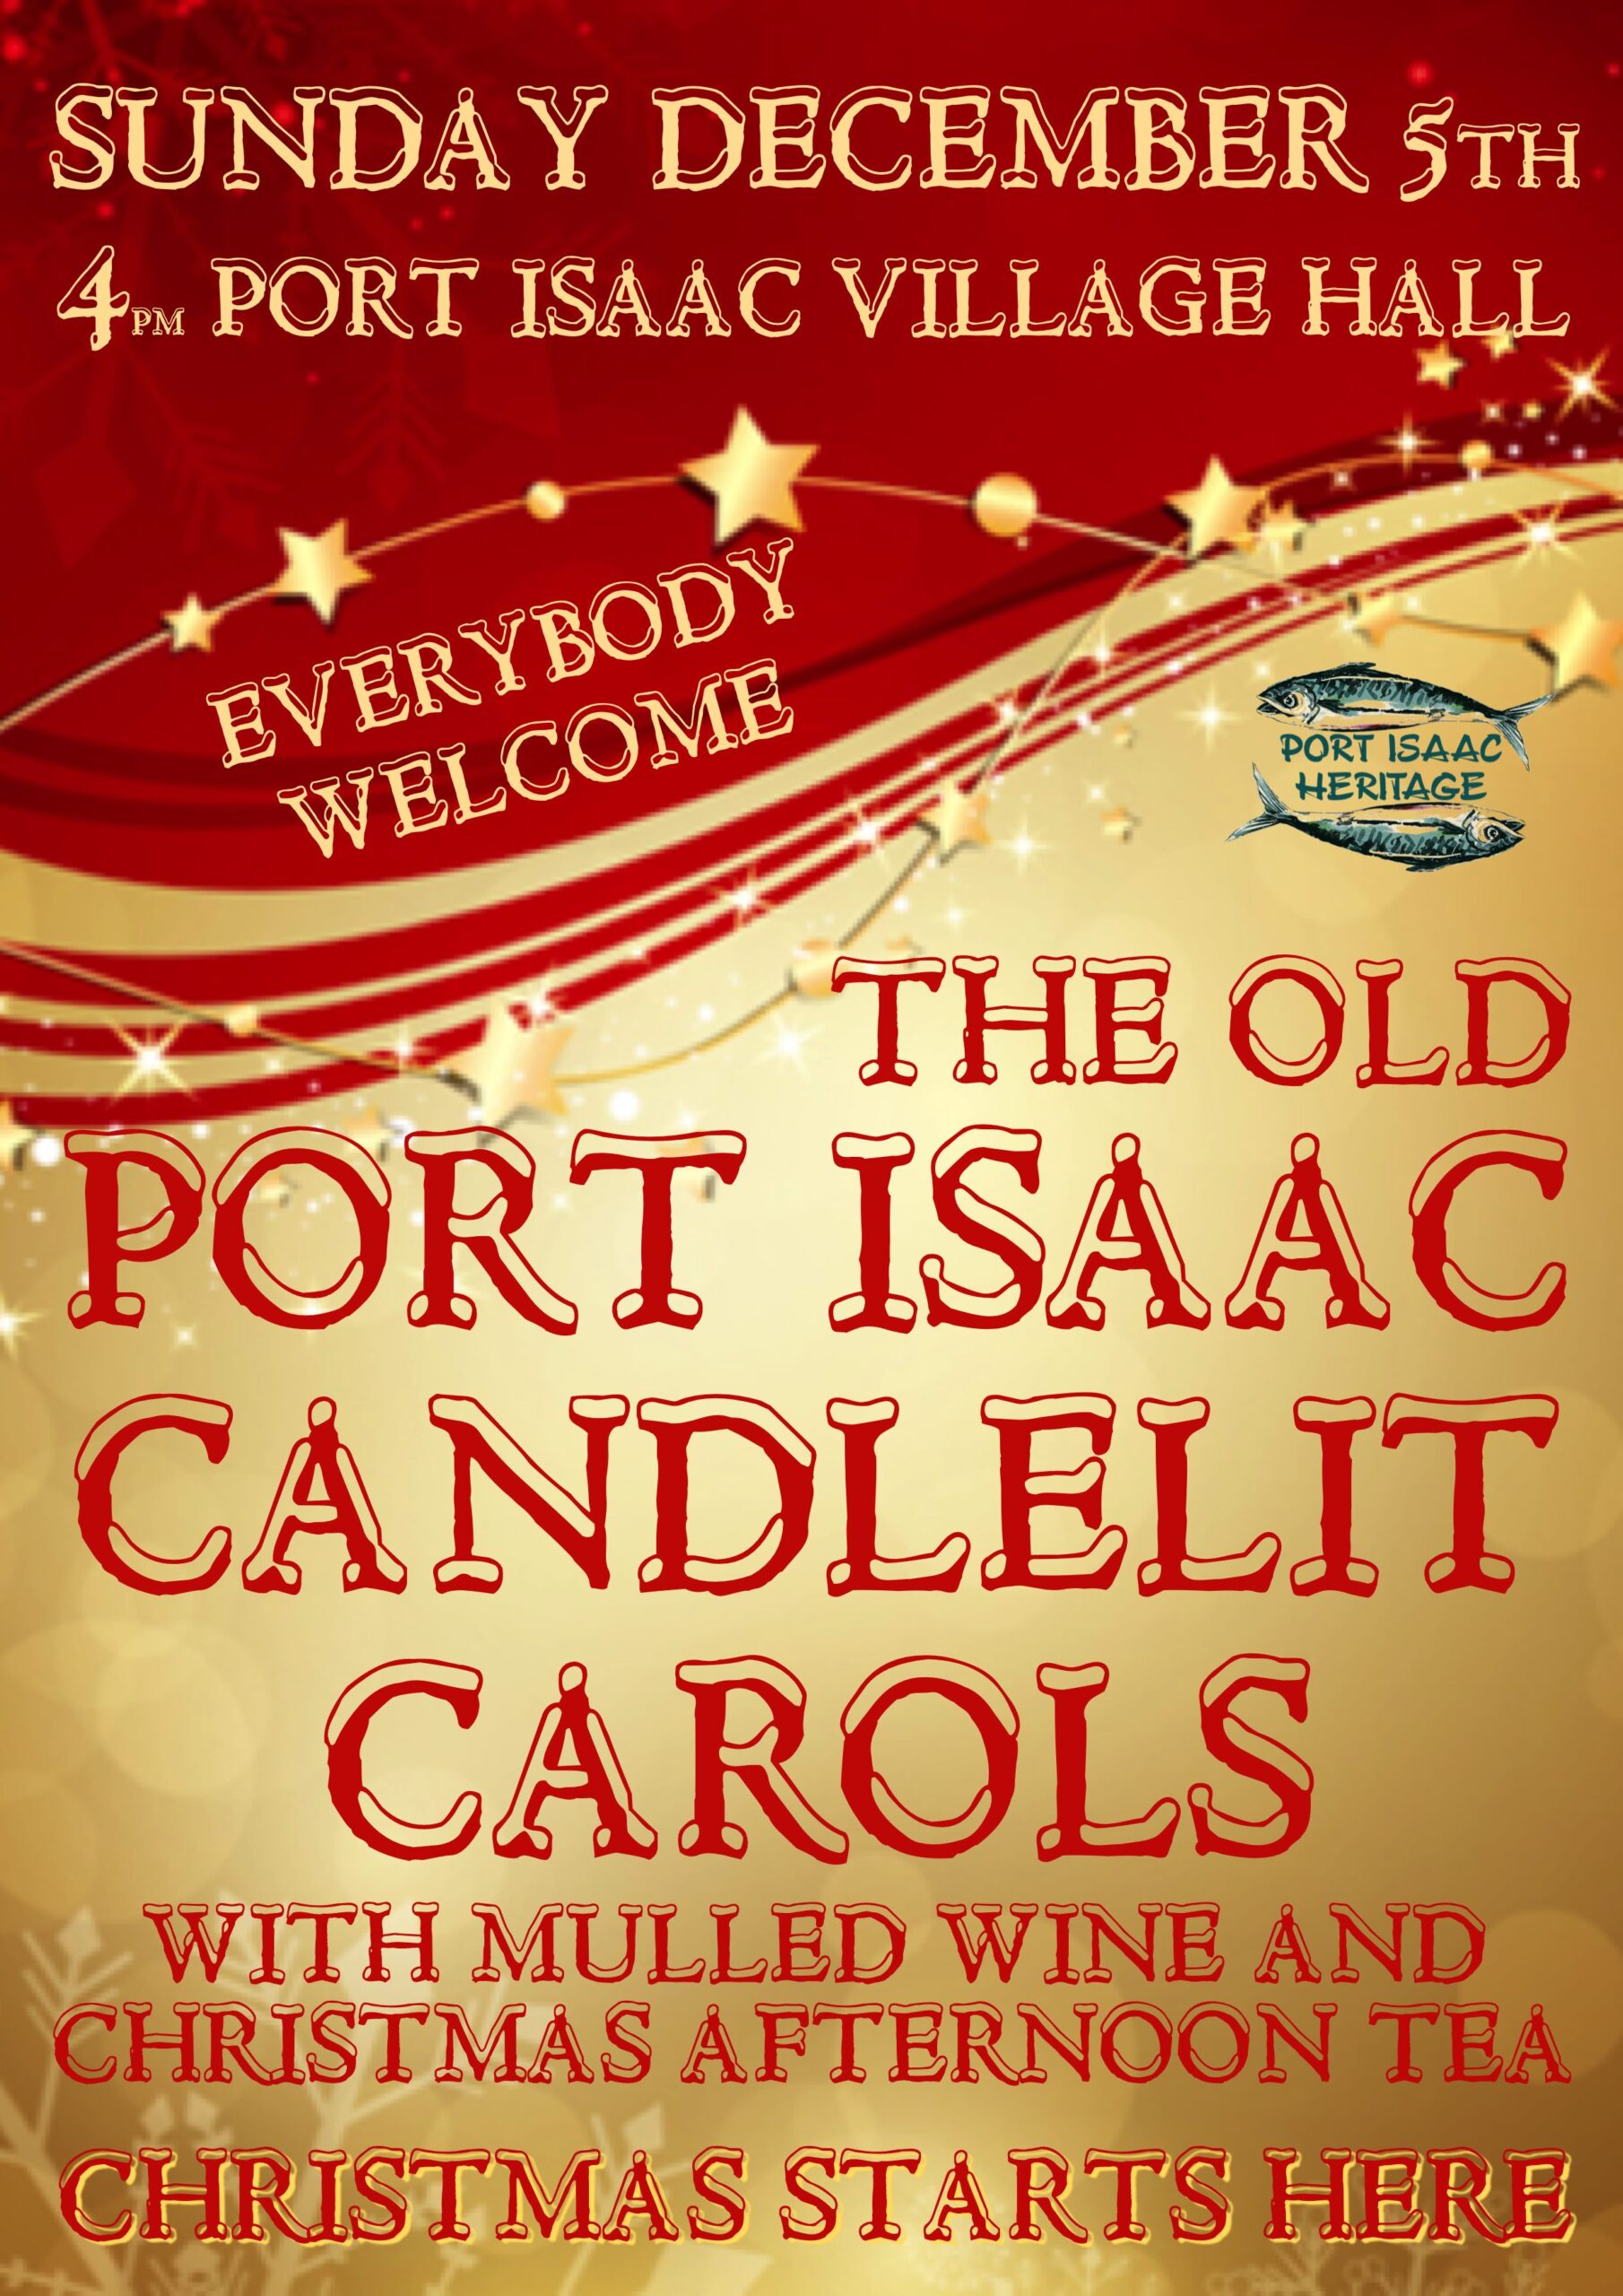 The Old Port Isaac Christmas Carols